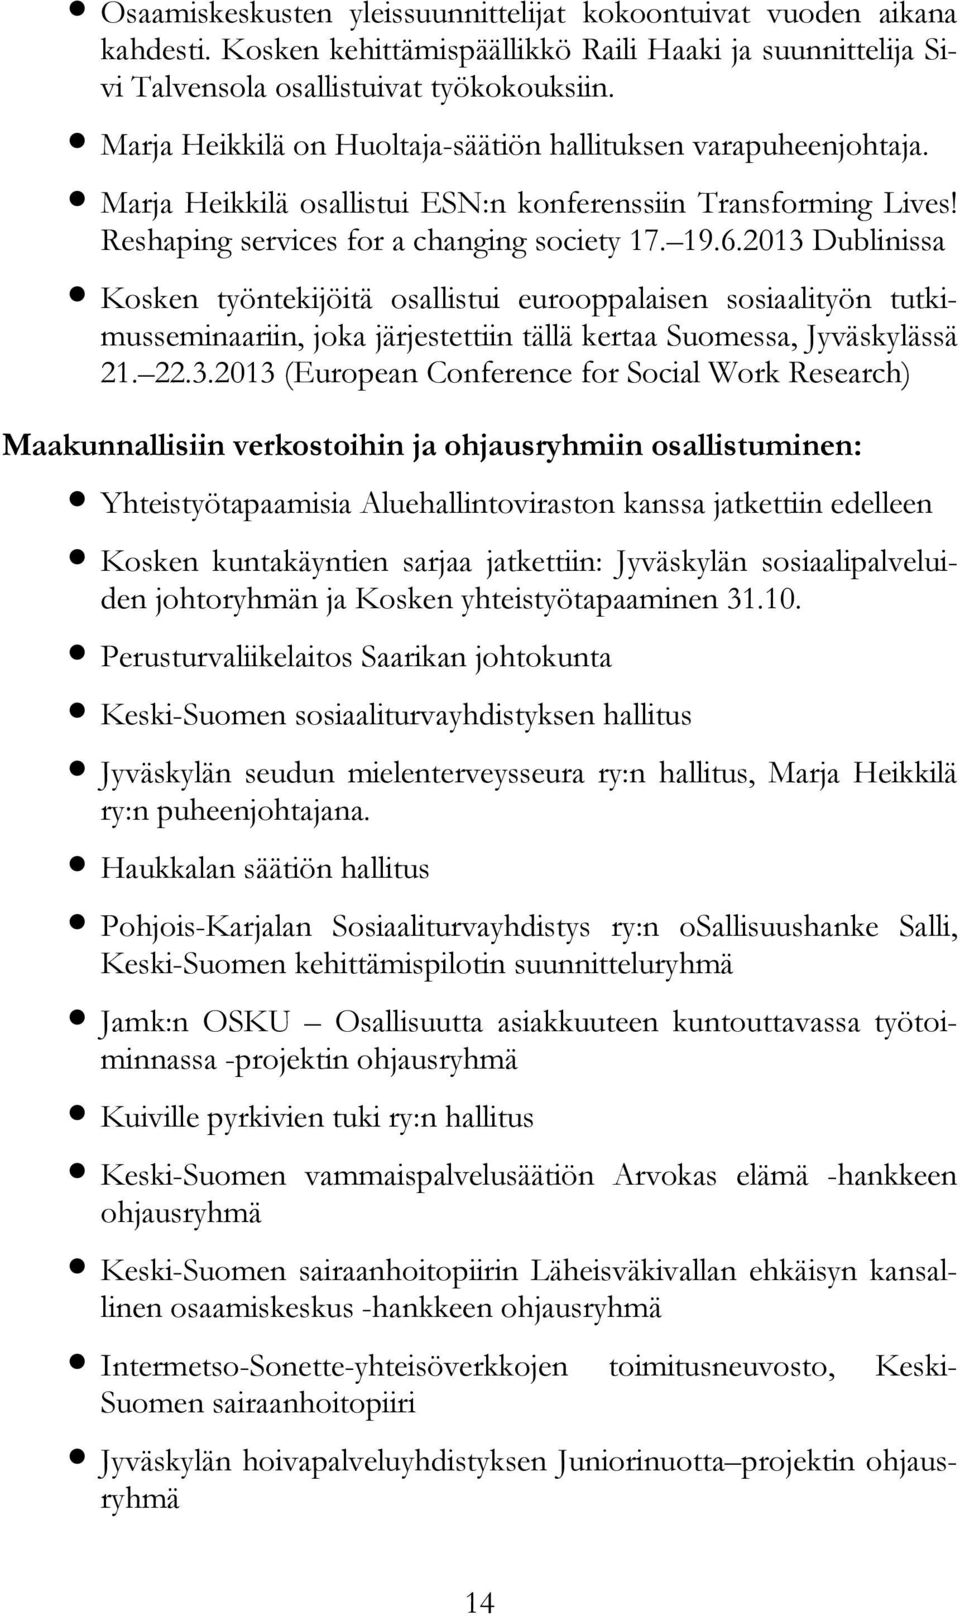 2013 Dublinissa Kosken työntekijöitä osallistui eurooppalaisen sosiaalityön tutkimusseminaariin, joka järjestettiin tällä kertaa Suomessa, Jyväskylässä 21. 22.3.2013 (European Conference for Social